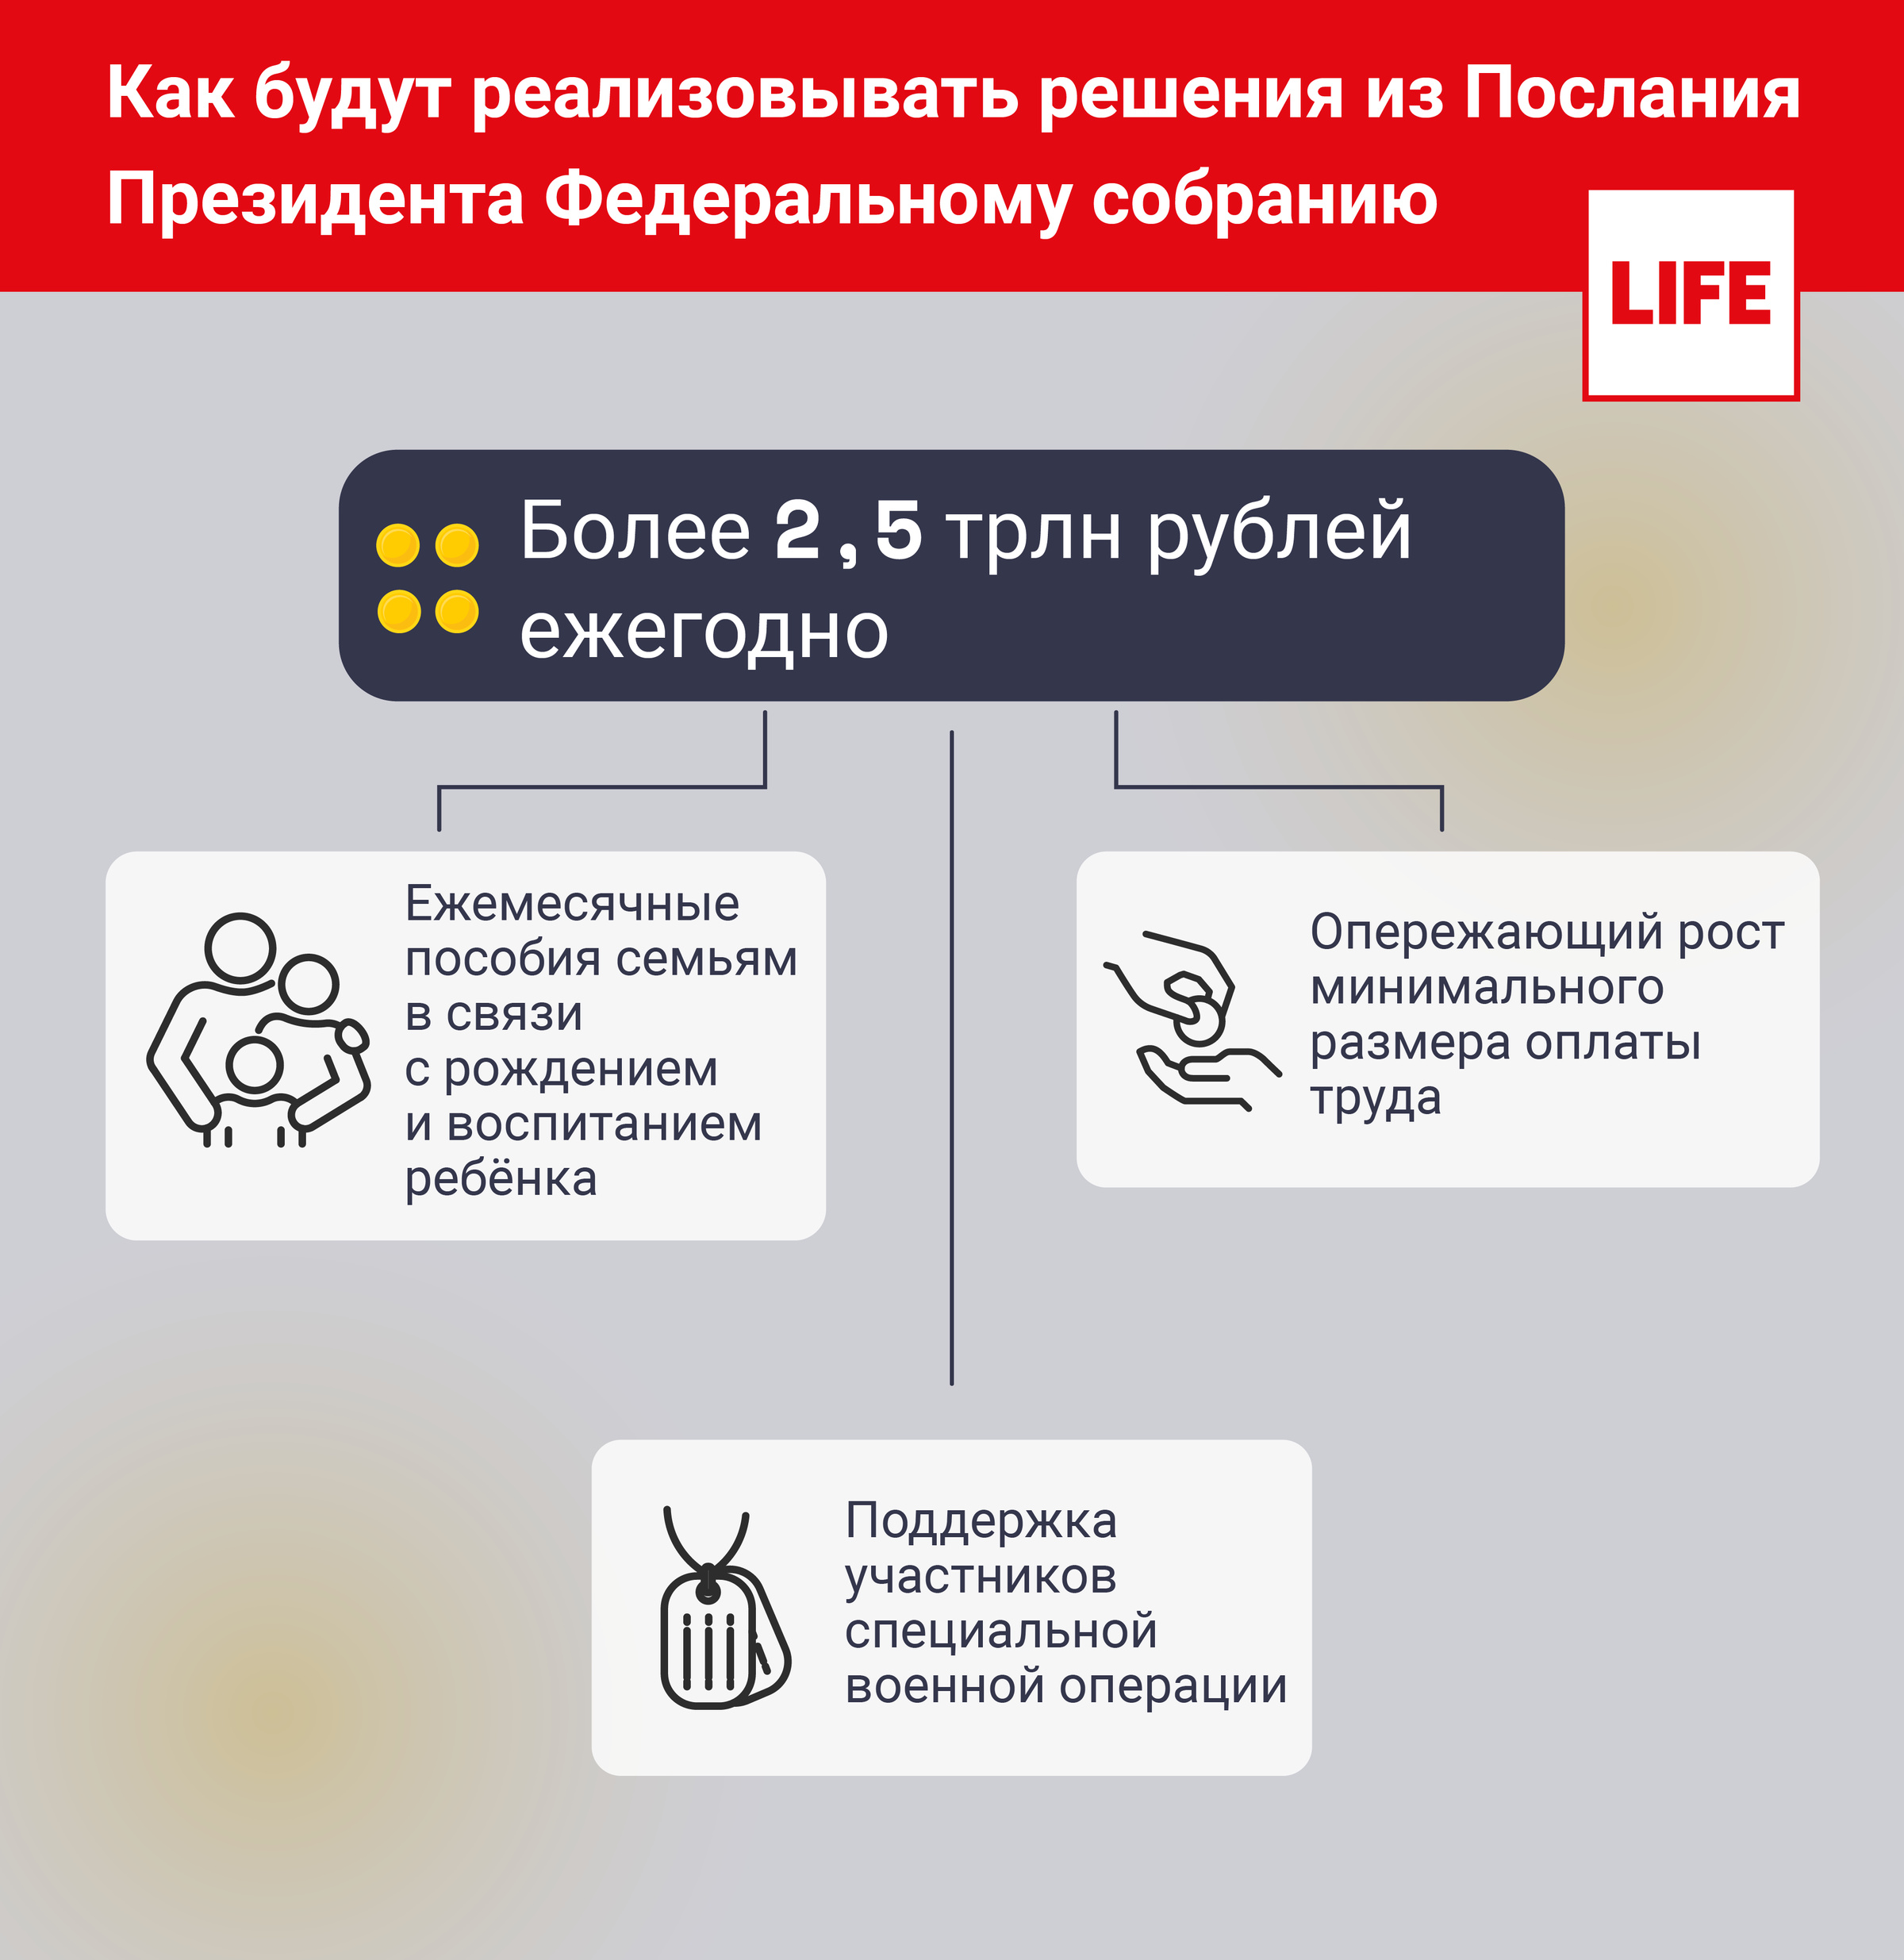 Как будут реализовывать решения из Послания Президента РФ Федеральному собранию. Инфографика © LIFE